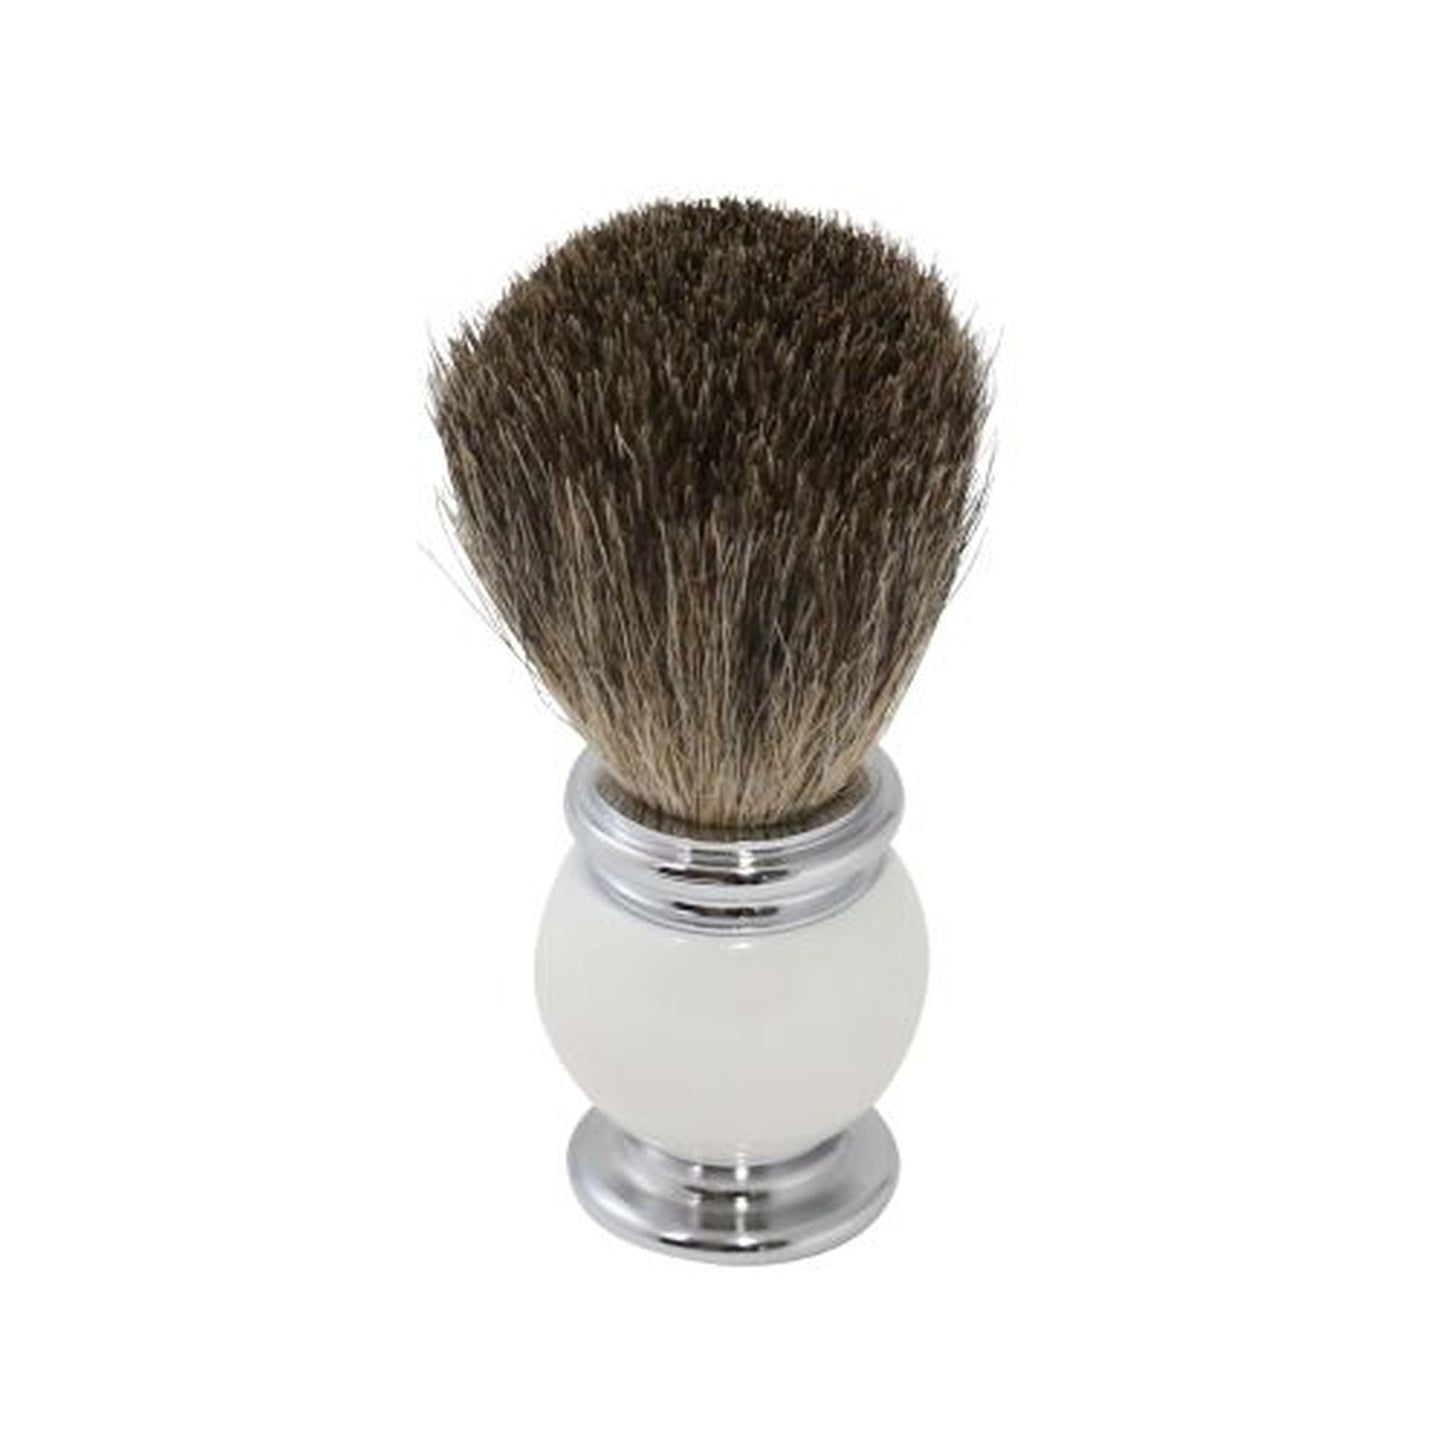 Bey Berk Pure Badger Shaving Brush With White Enamel Handle